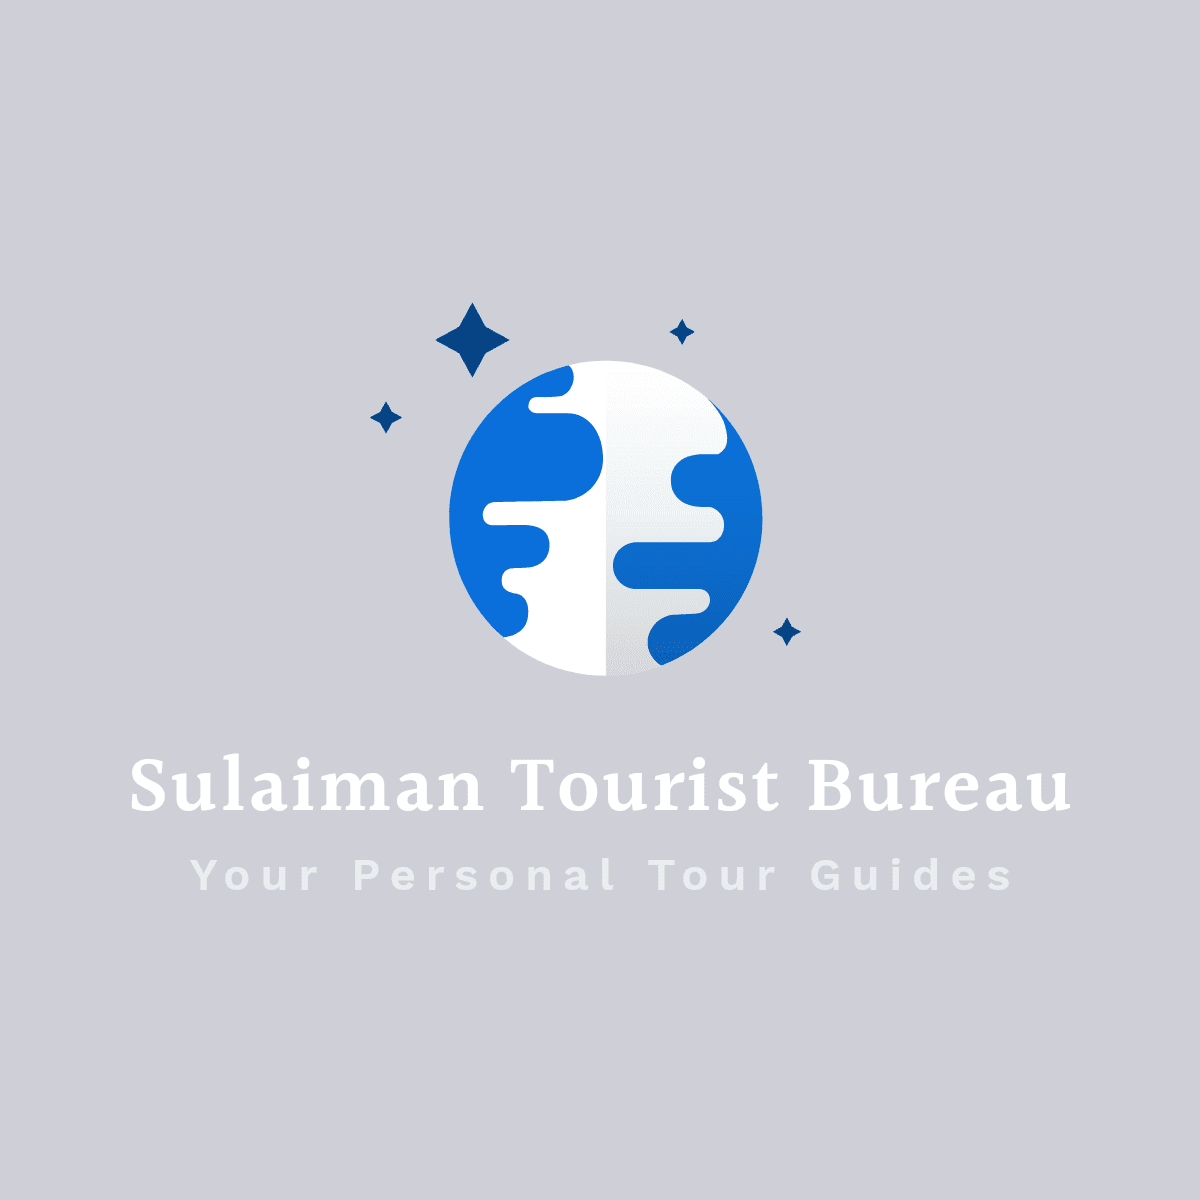 Sulaiman Tourist Bureau